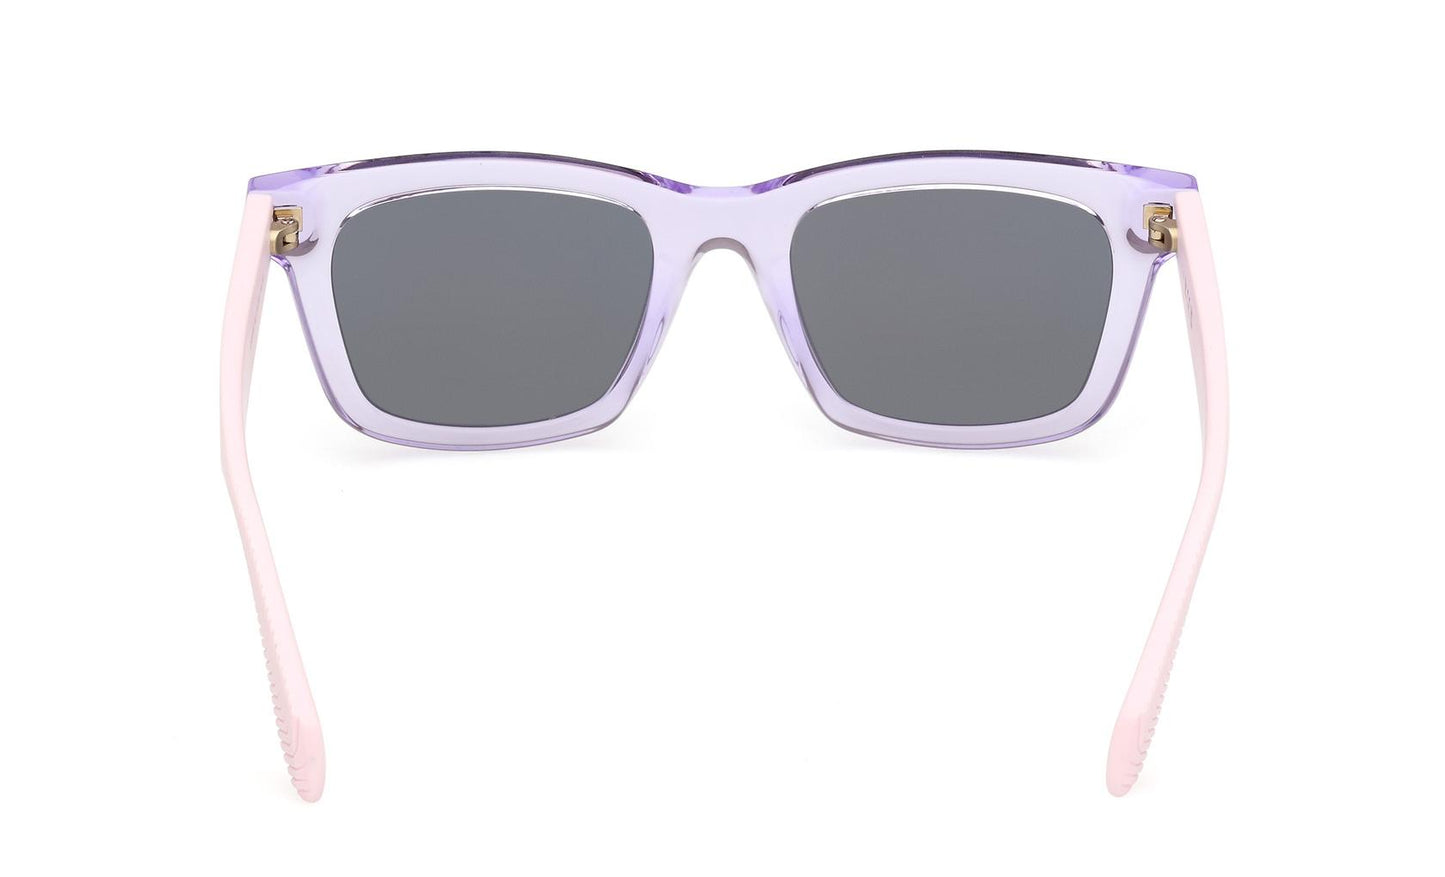 Adidas Originals Sunglasses OR0116 72Z